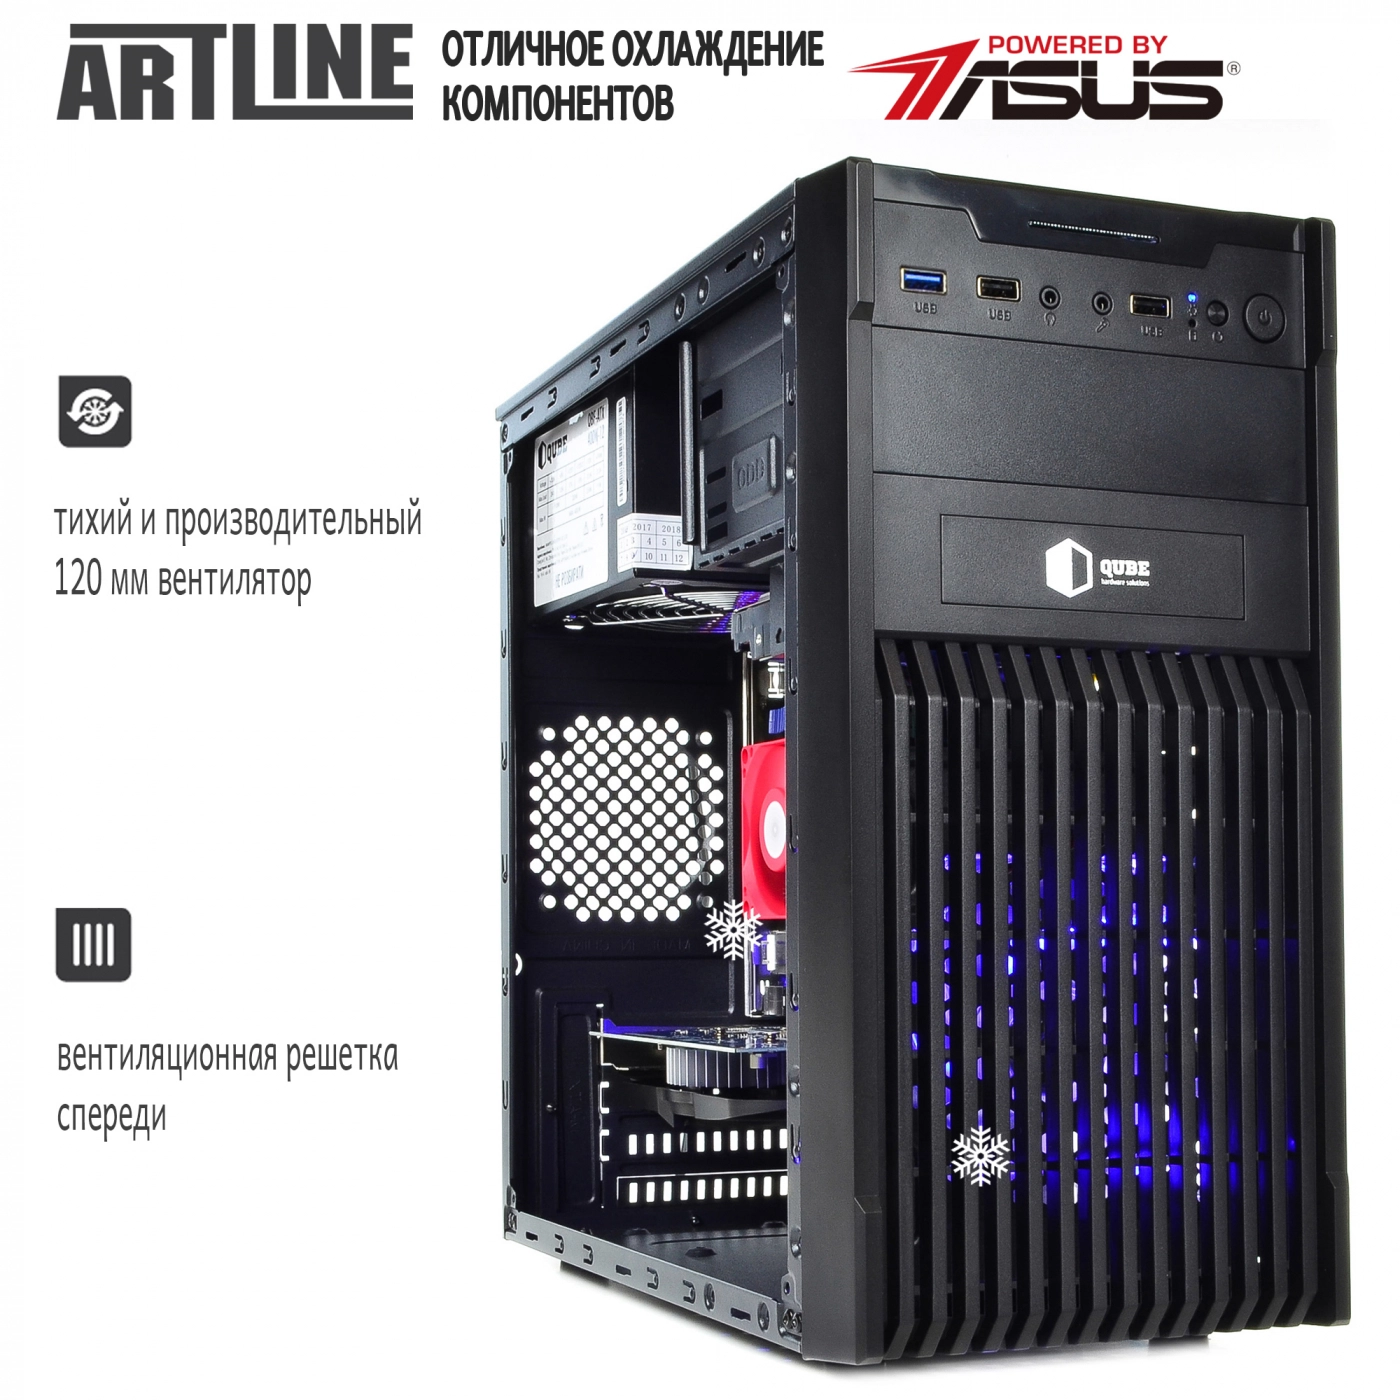 Купить Компьютер ARTLINE Gaming X44v15 - фото 2